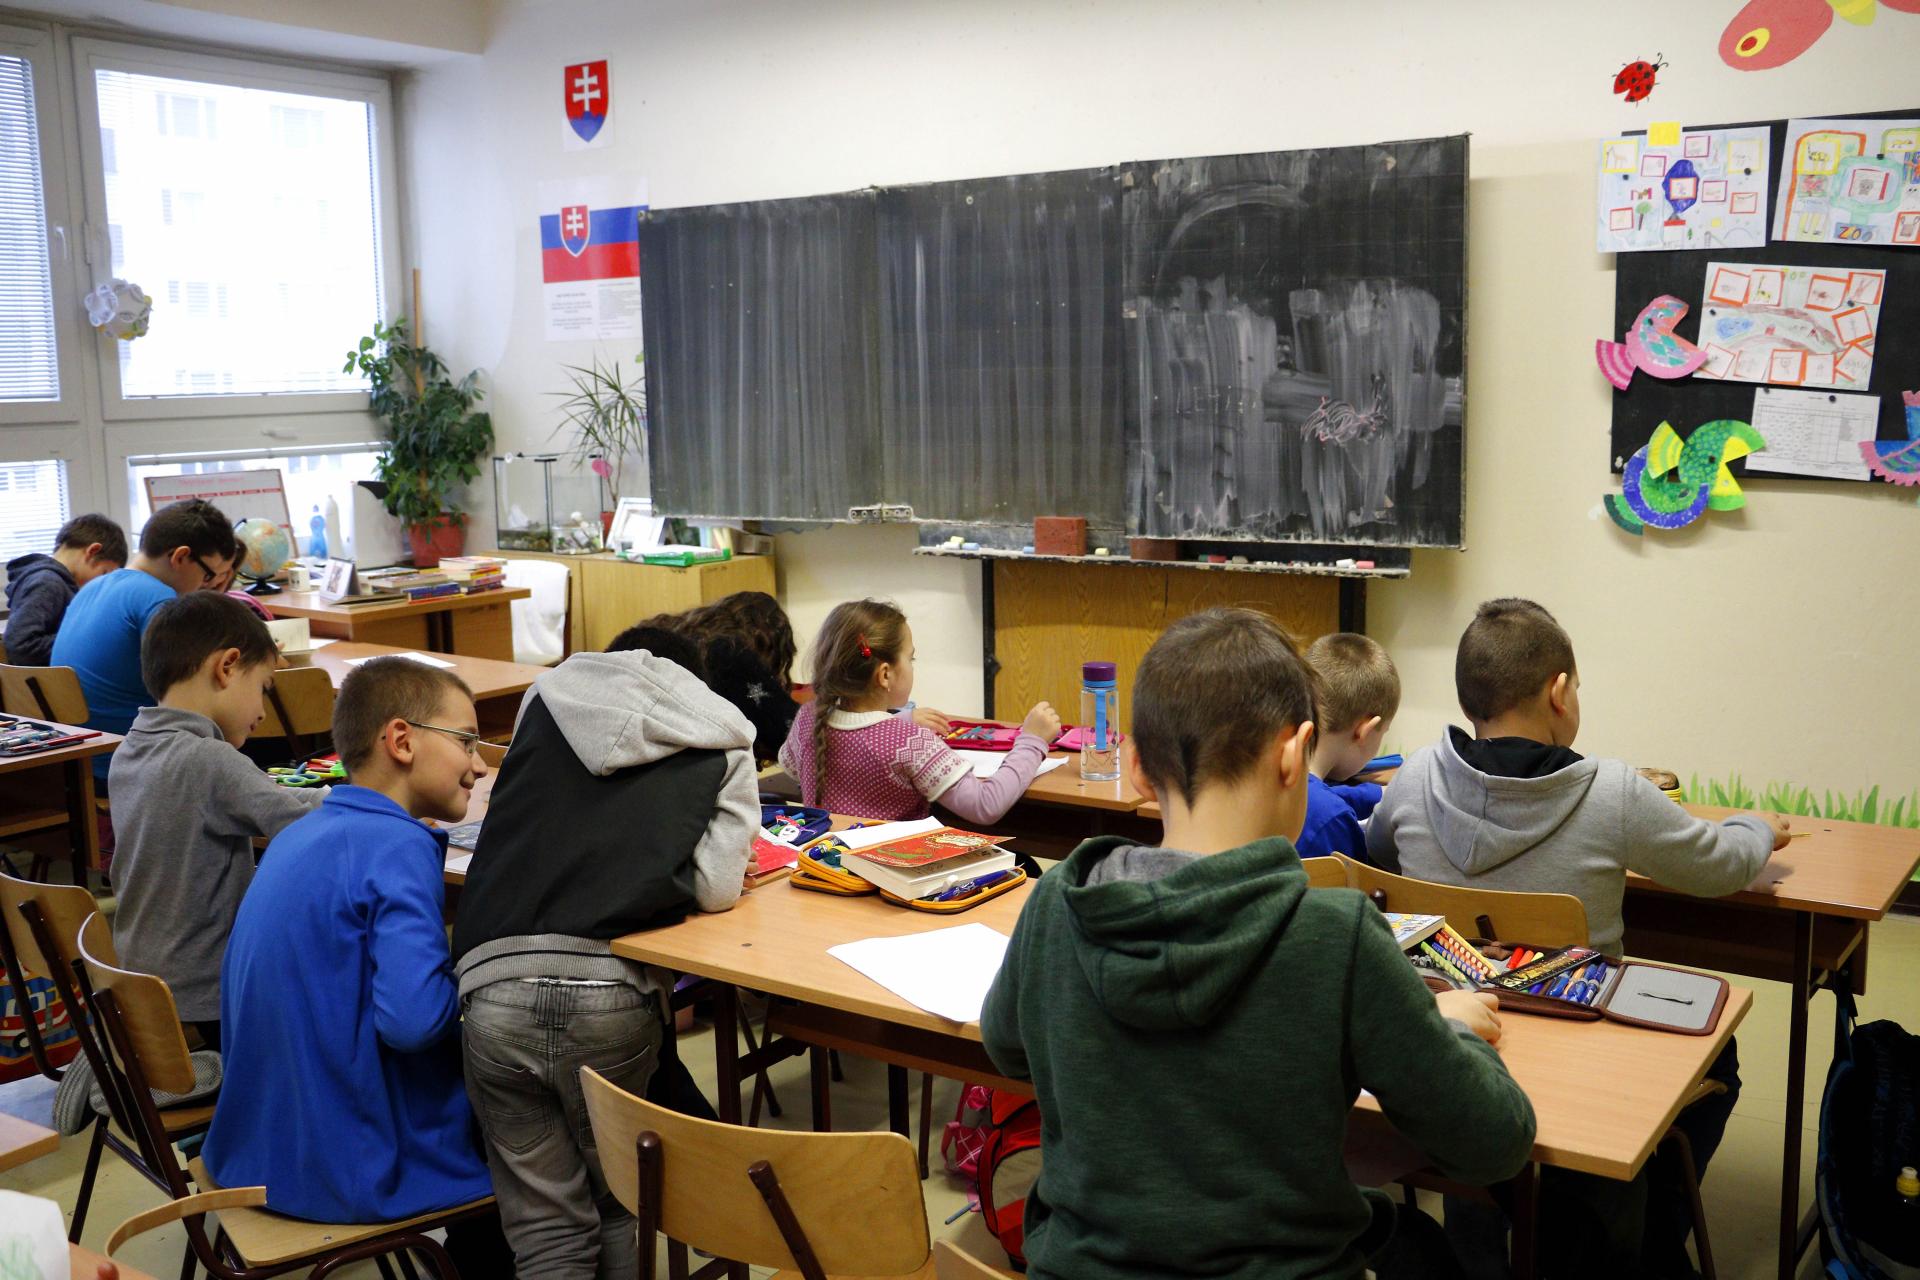 Slovenských učiteľov vyháňa zo škôl stres. „Problémoví žiaci? Dýchajte,“ radia pedagógom